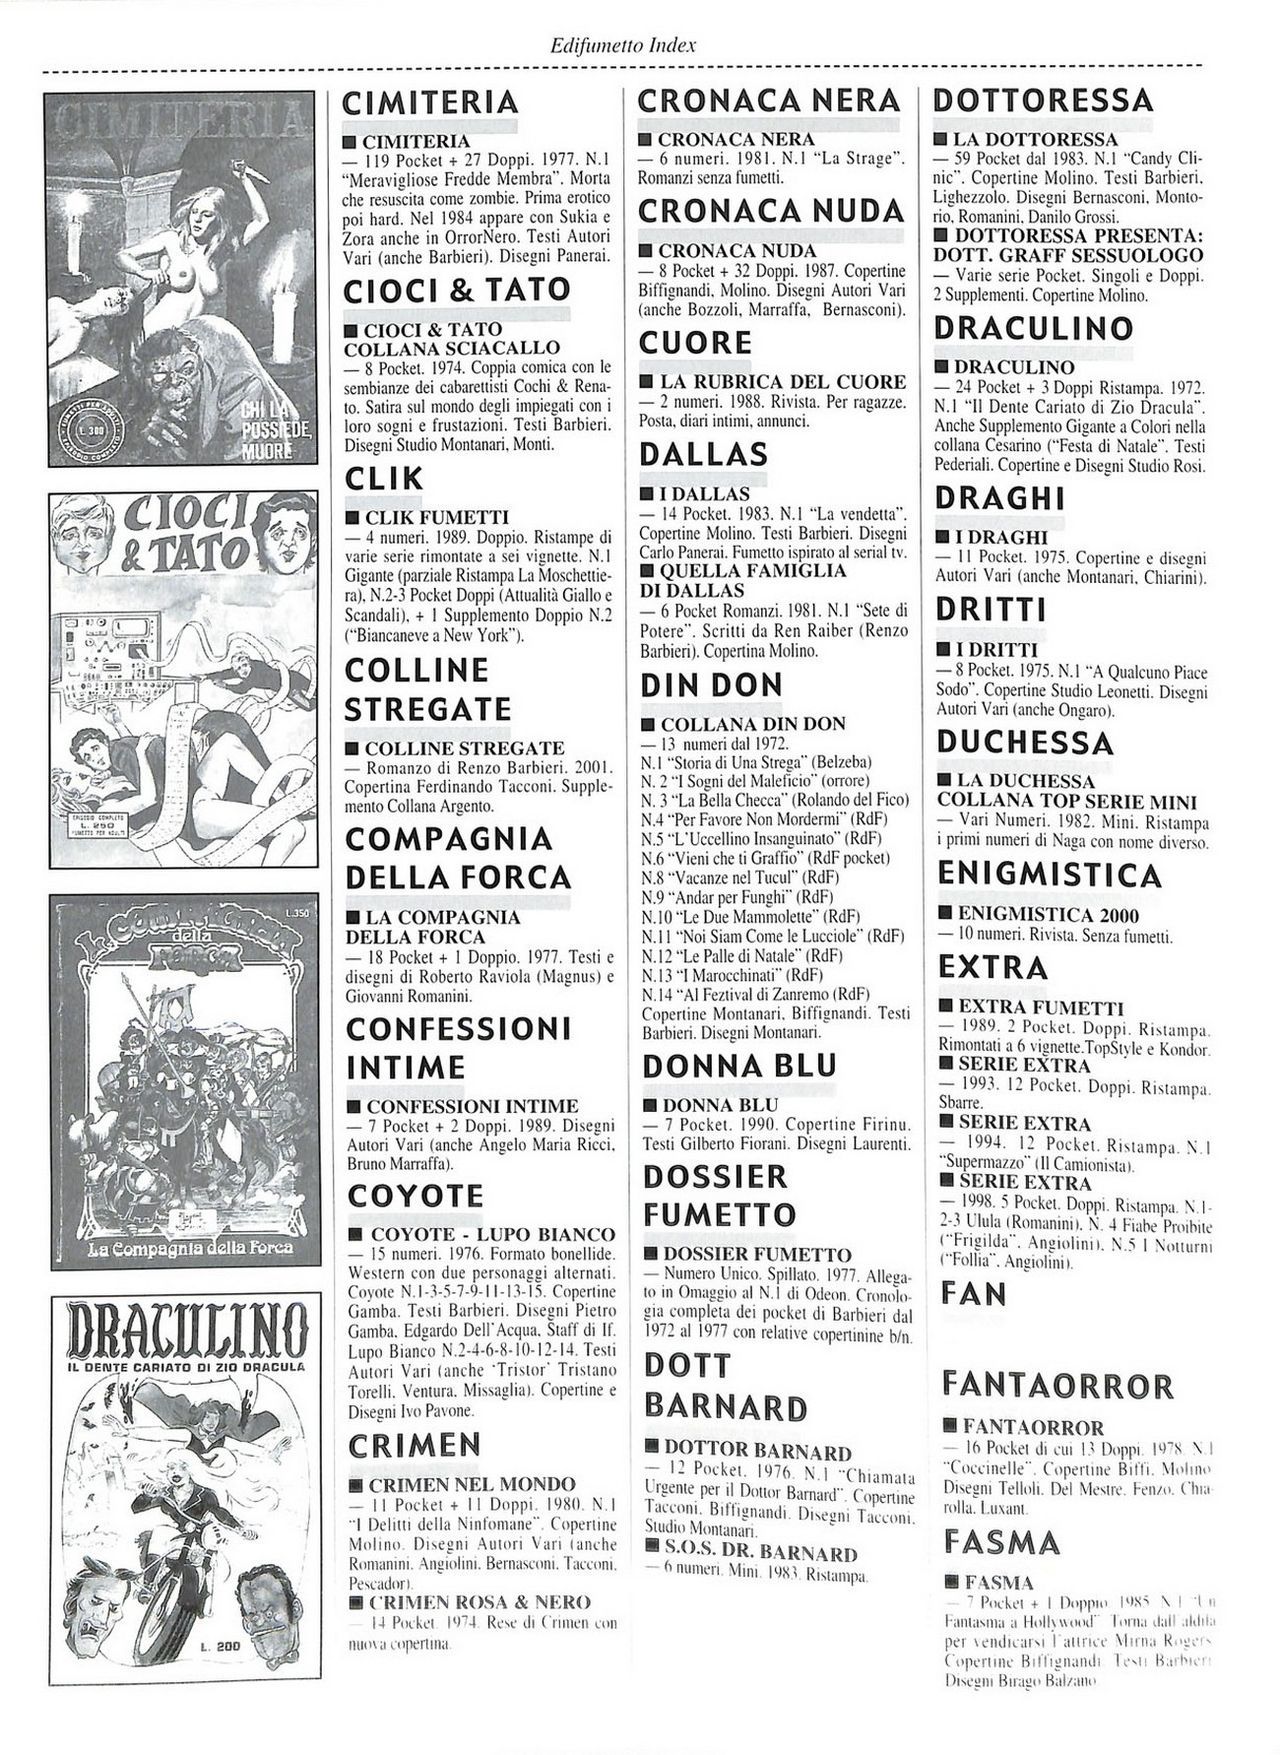 EdiFumetto index (Graziano Origa, 2002) [Italian] 81